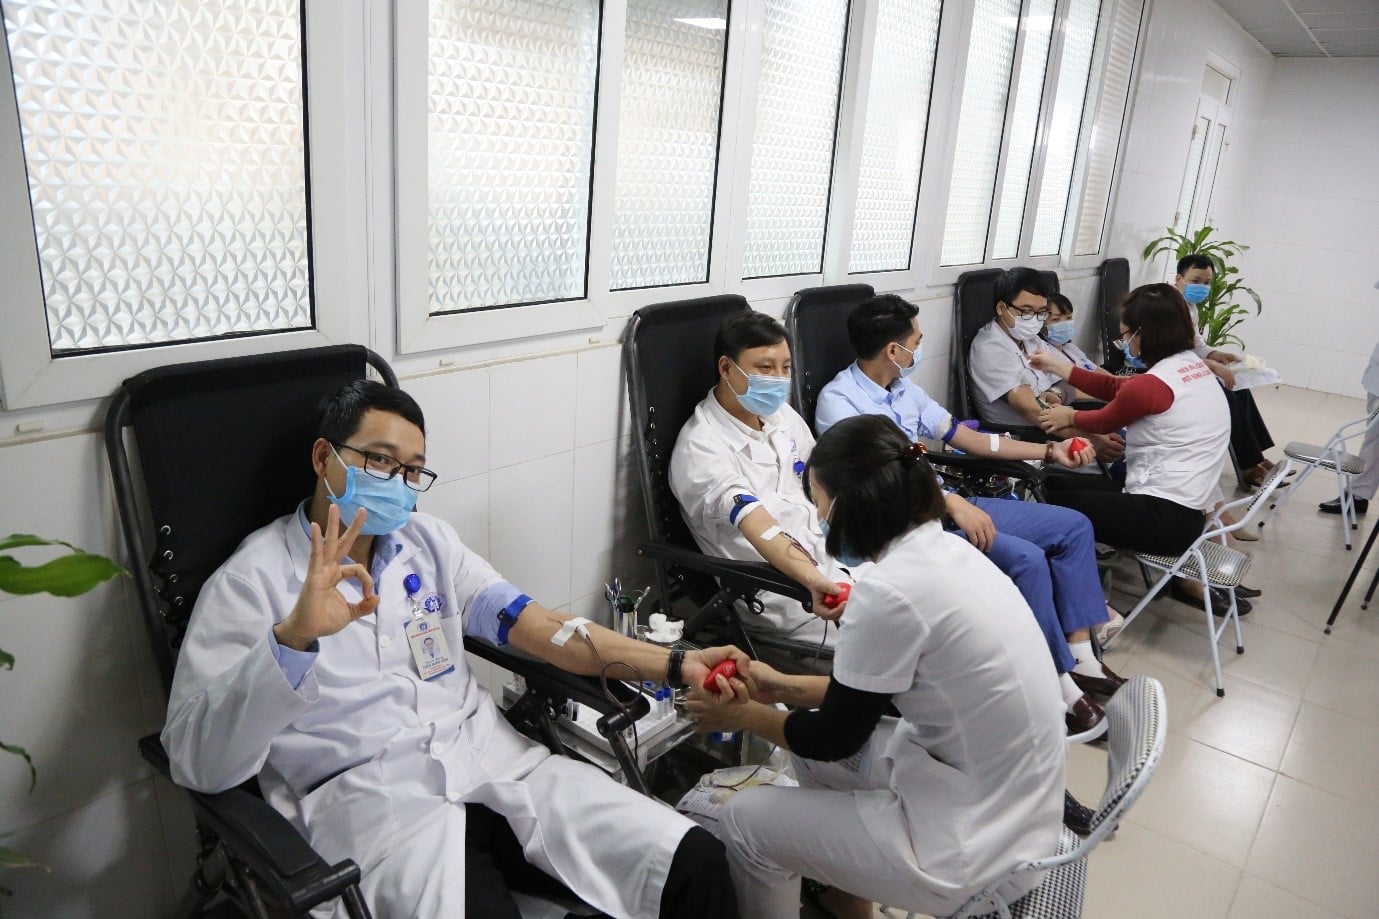 Các chương trình hiến tình nguyện luôn nhận được sự hưởng ứng của đông đảo cán bộ viên chức, người lao động tại Bệnh viện đa khoa tỉnh Phú Thọ